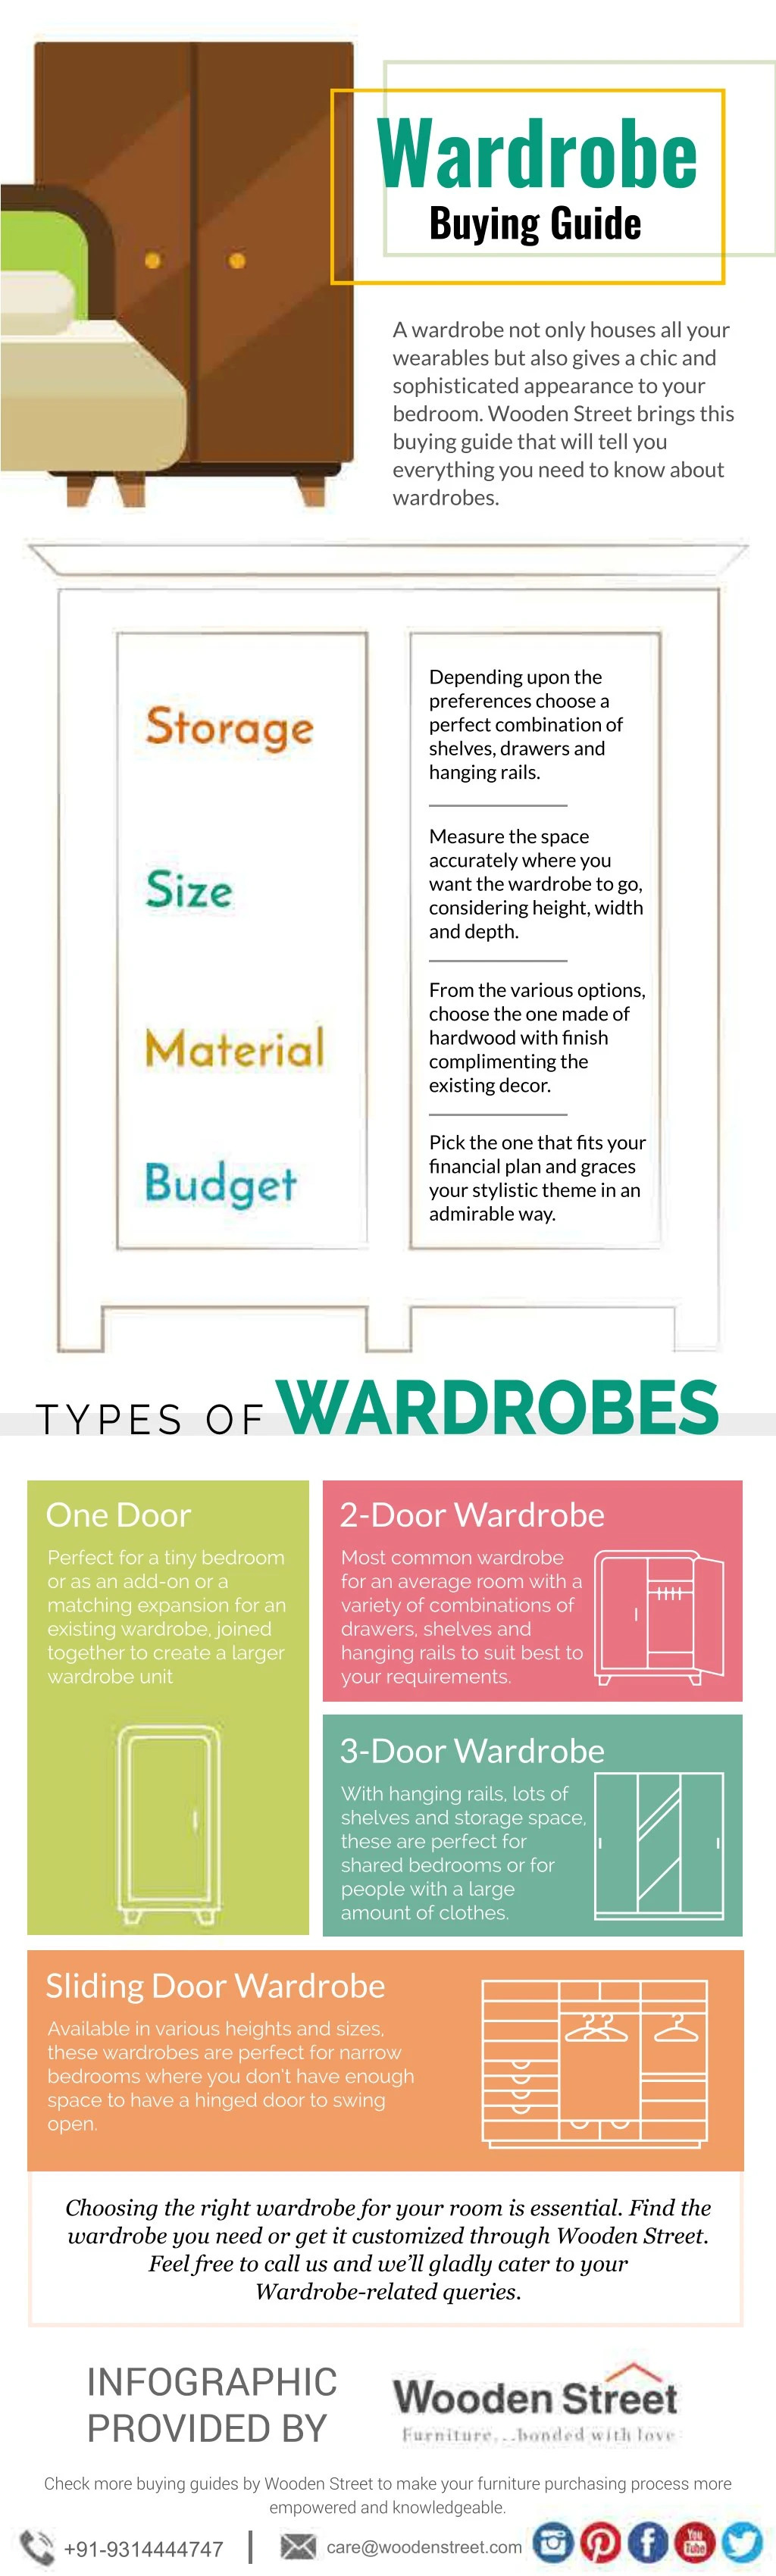 wardrobe buying guide